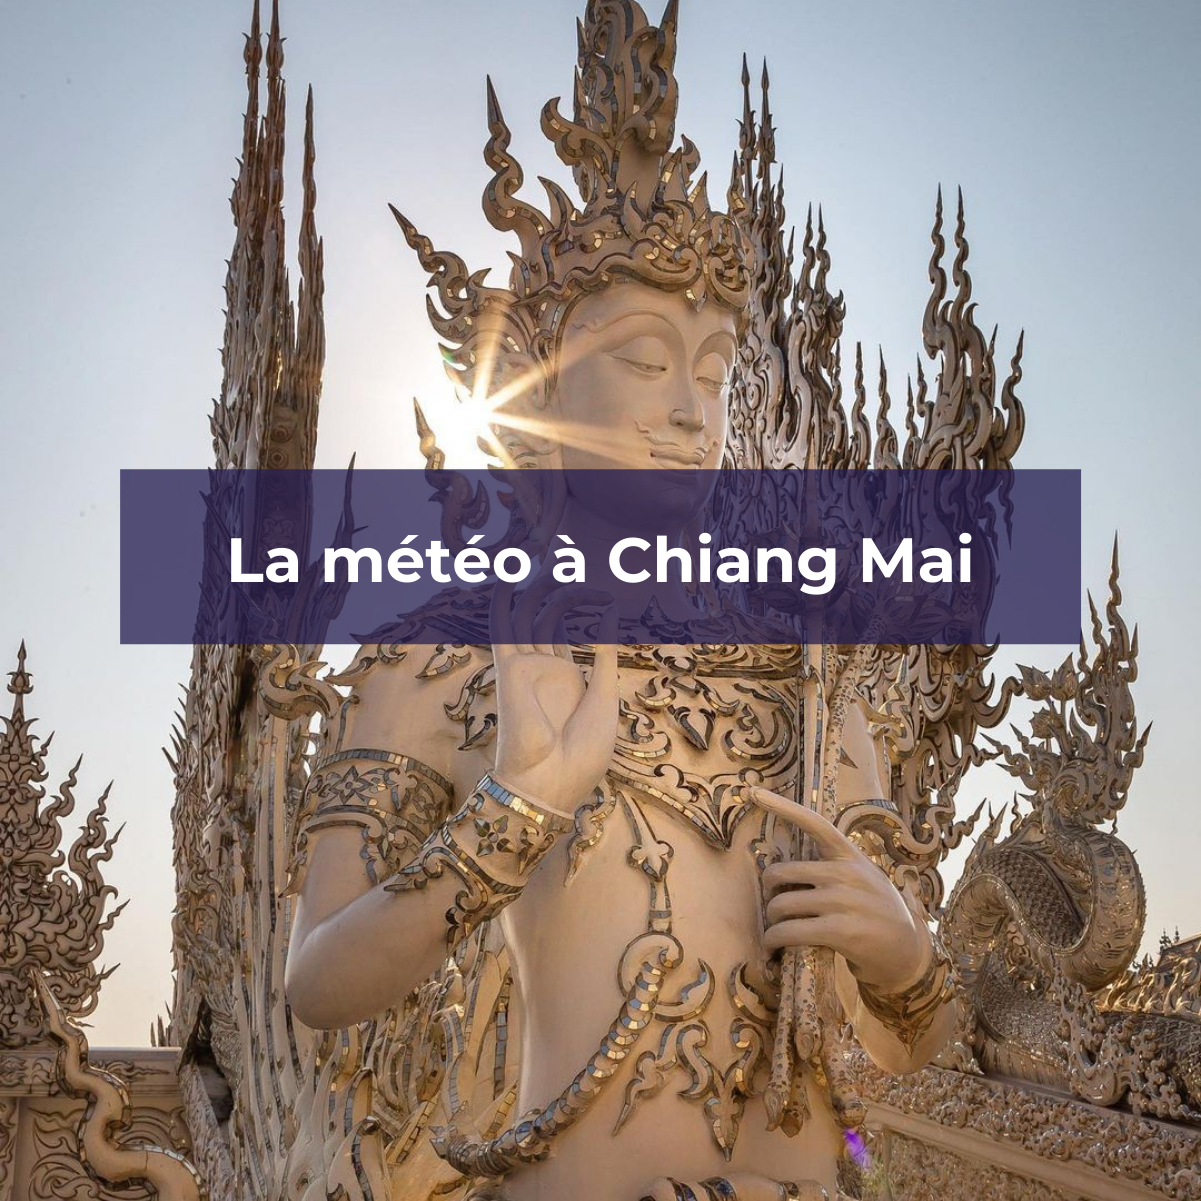 La météo à Chiang Mai en Thaïlande - White Temple, Chiang Rai - Instagram © @the.travelling.teeth